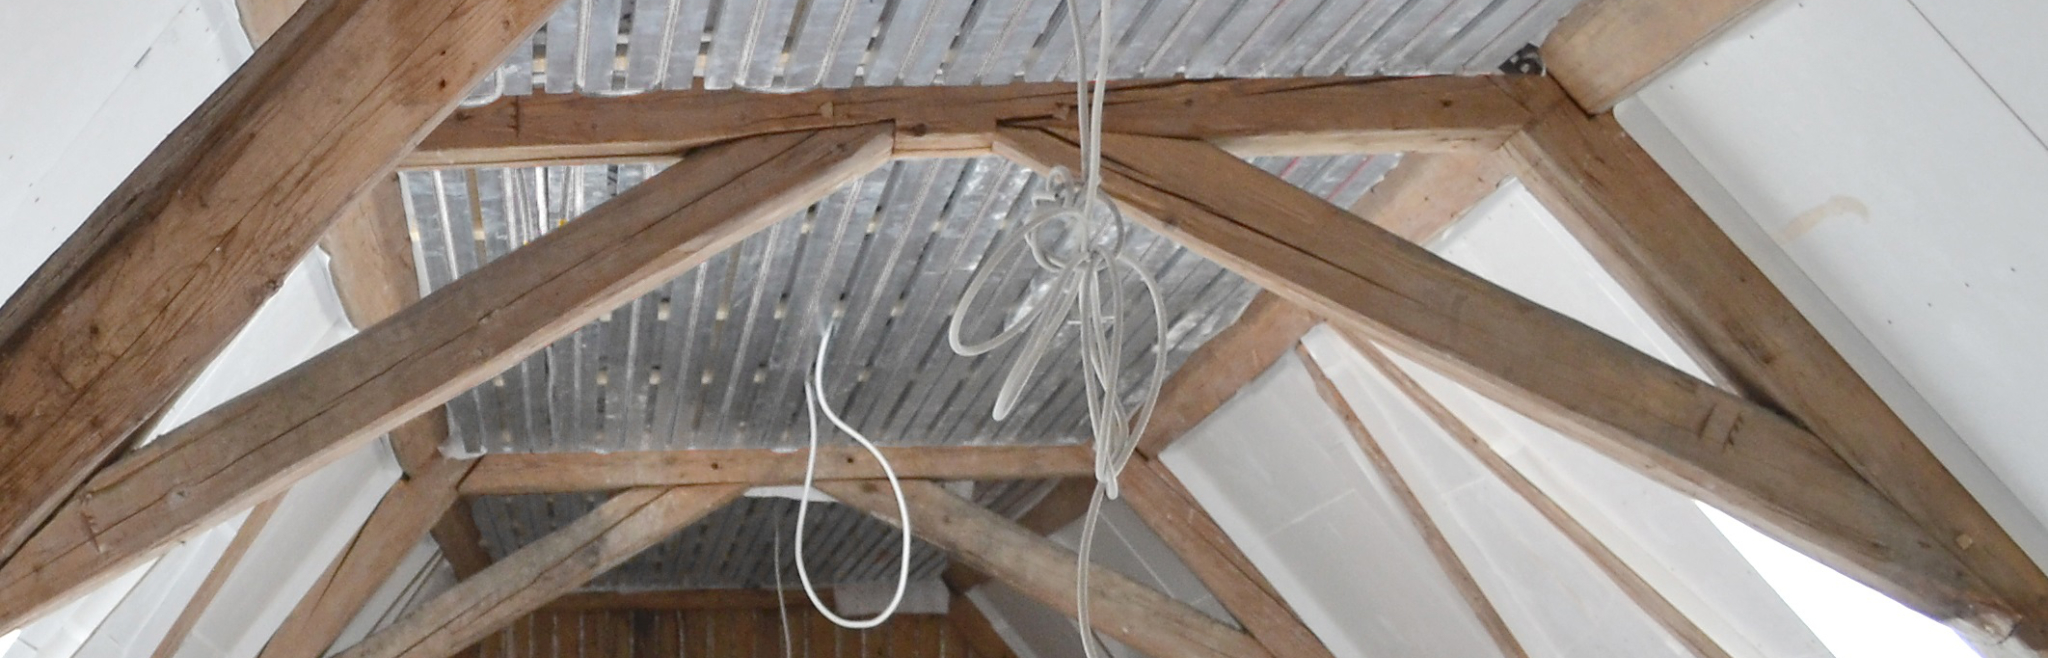 Montage der Klimadecke im Dachgeschoss mit Balkendecke